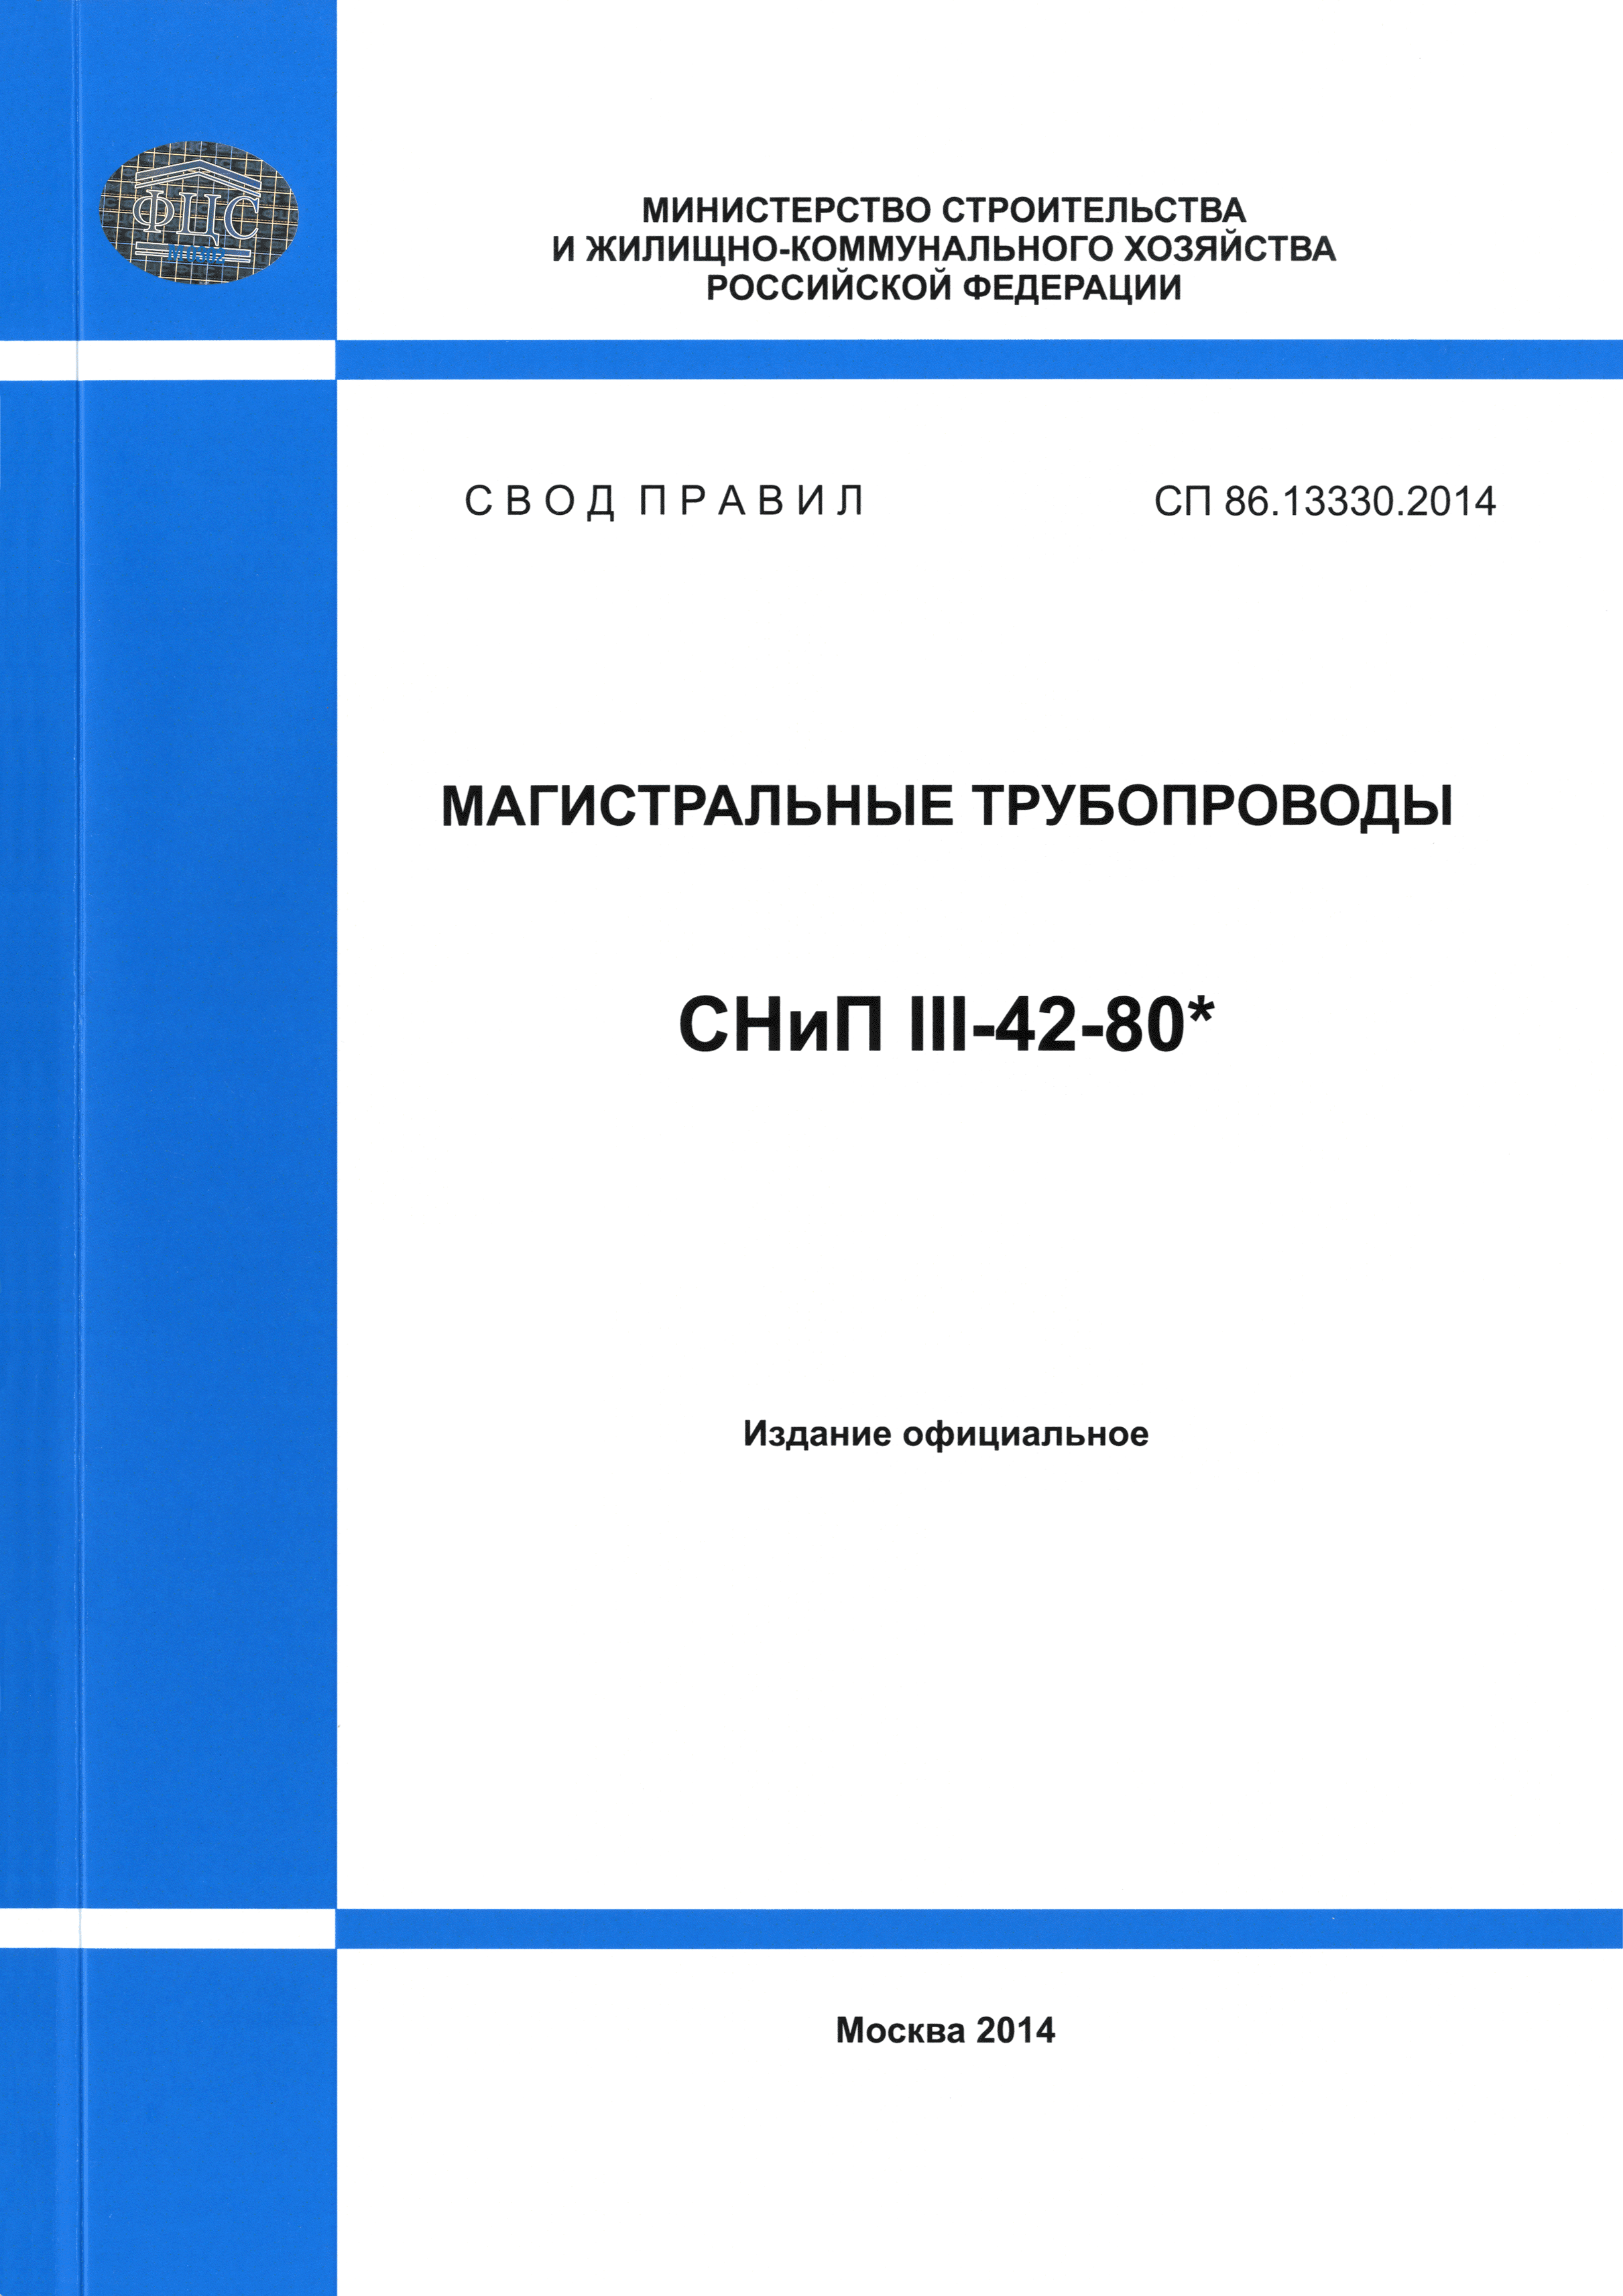 СП 86.13330.2014